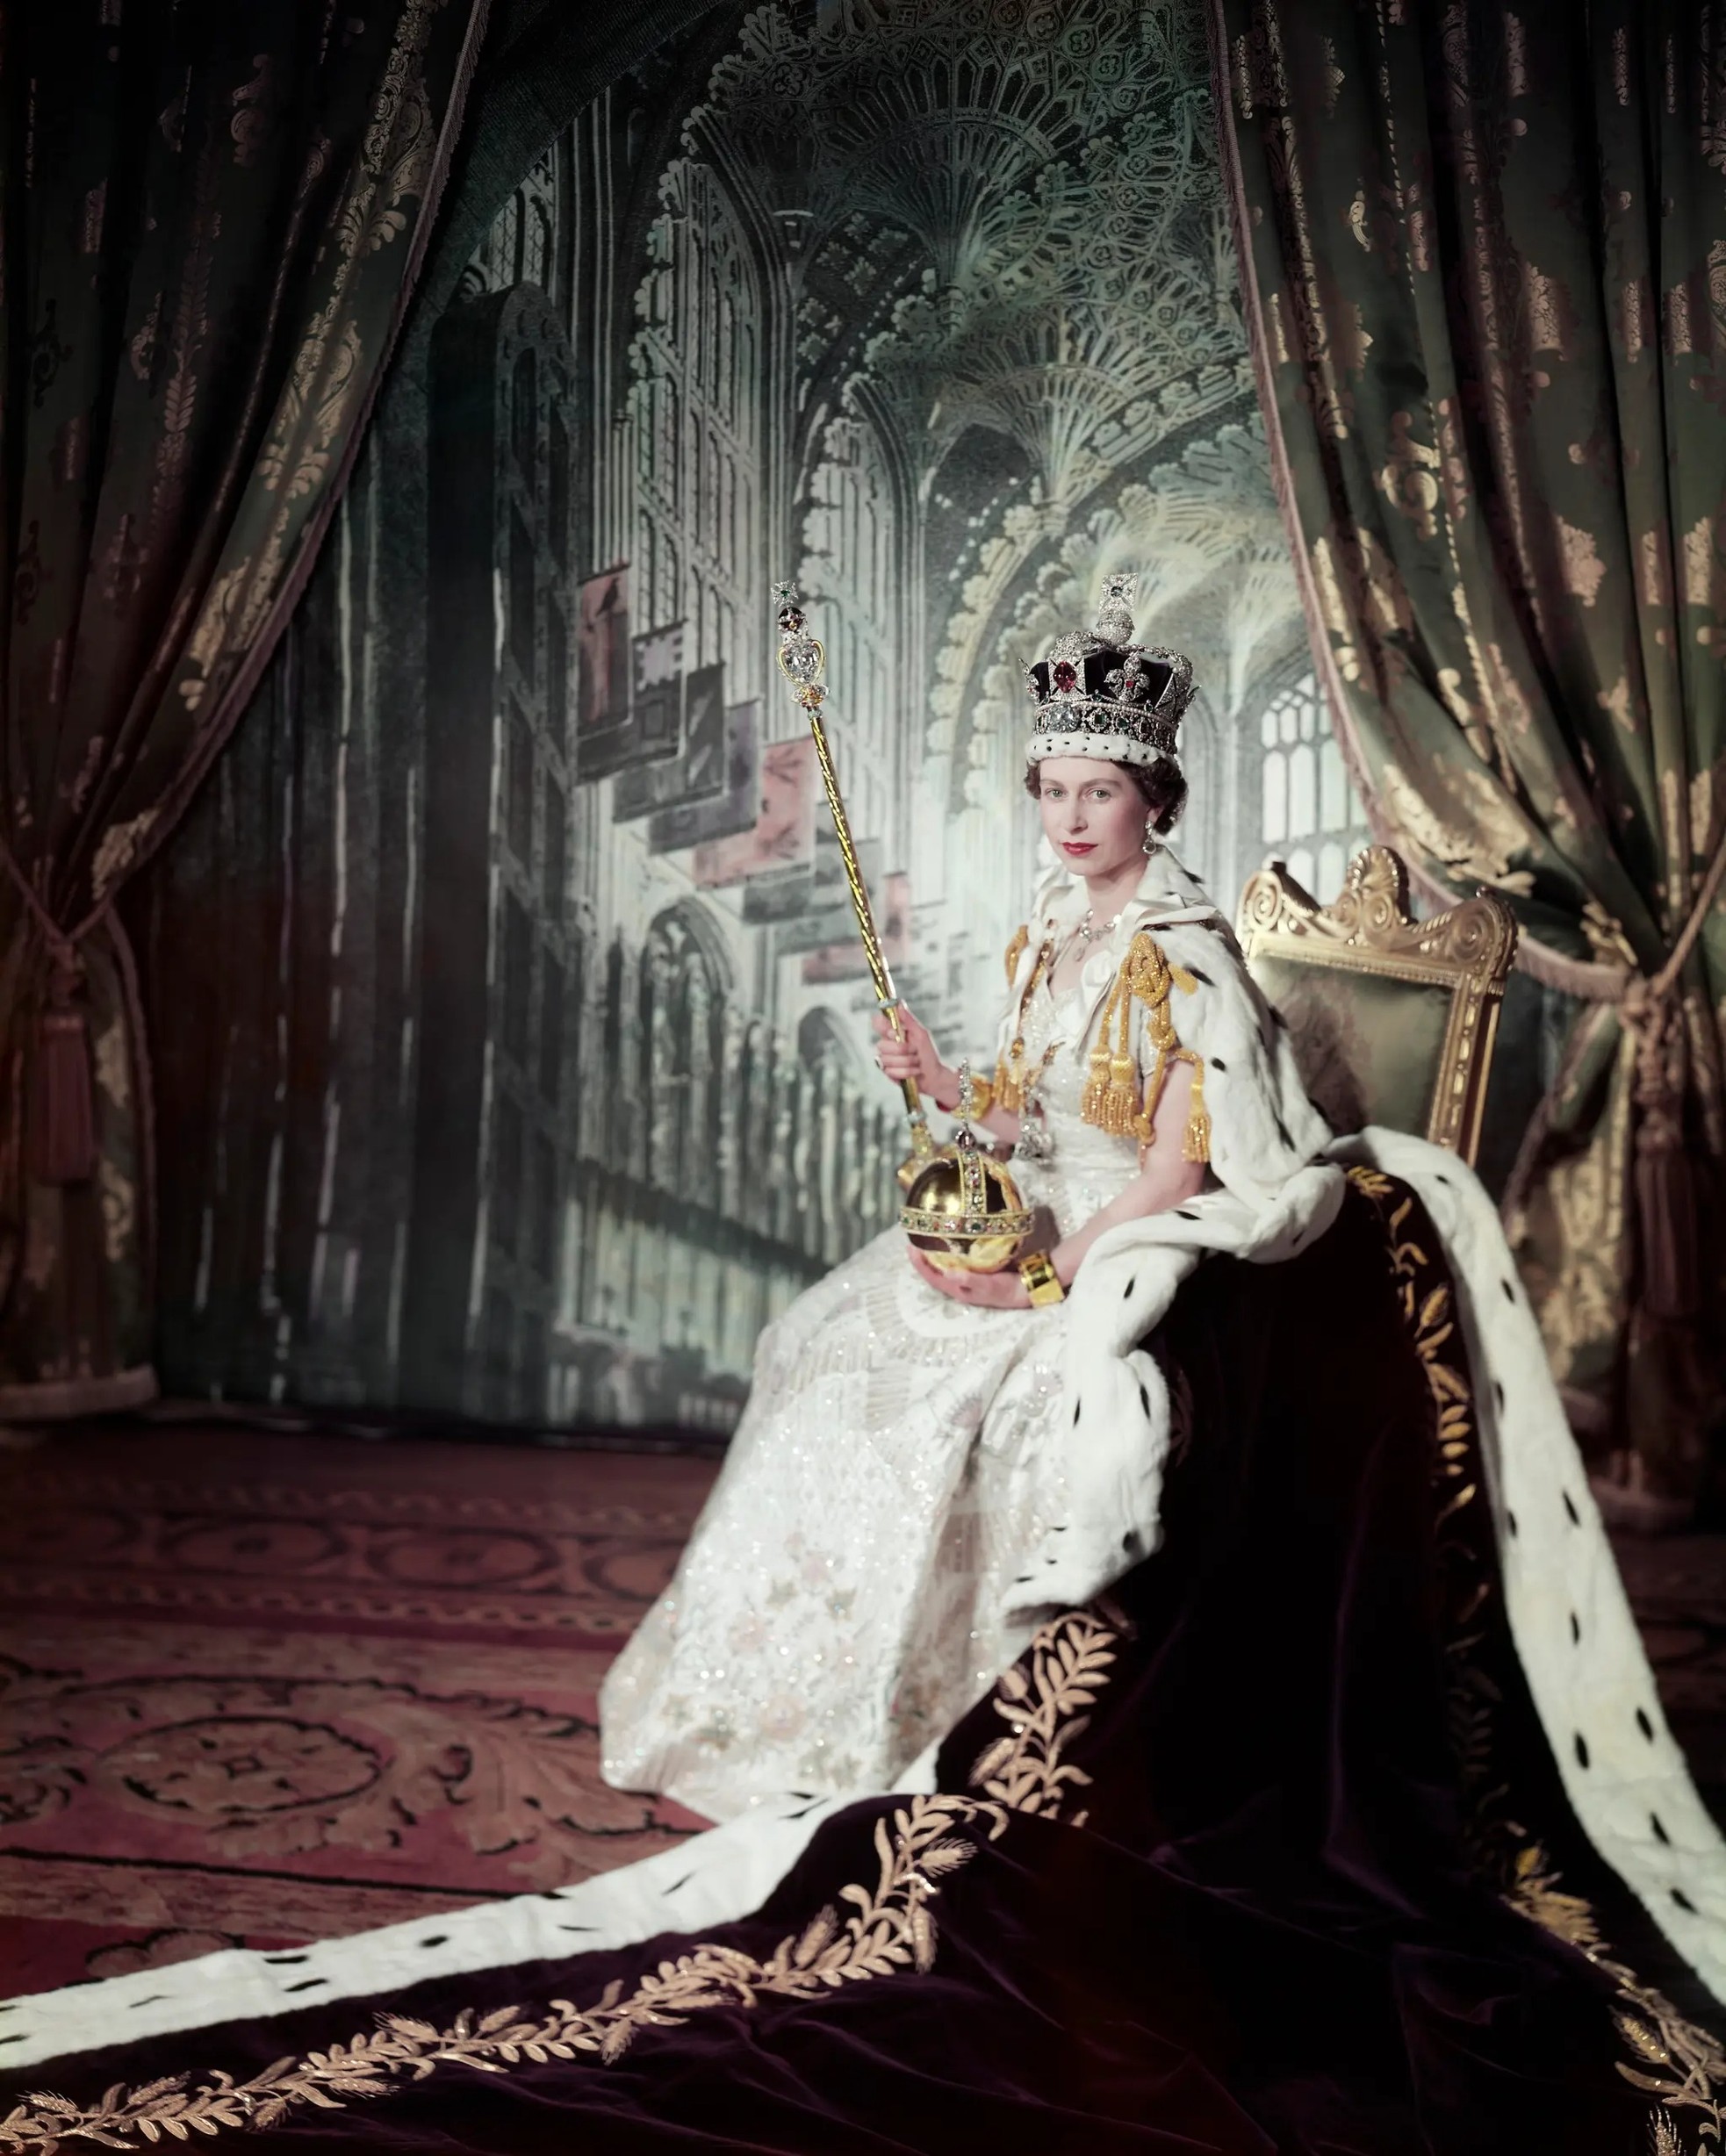 MướnMua Đầm Nữ Hoàng Châu Âu Vải Thêu Giá Tốt Nhất Tại LucTieuMicom